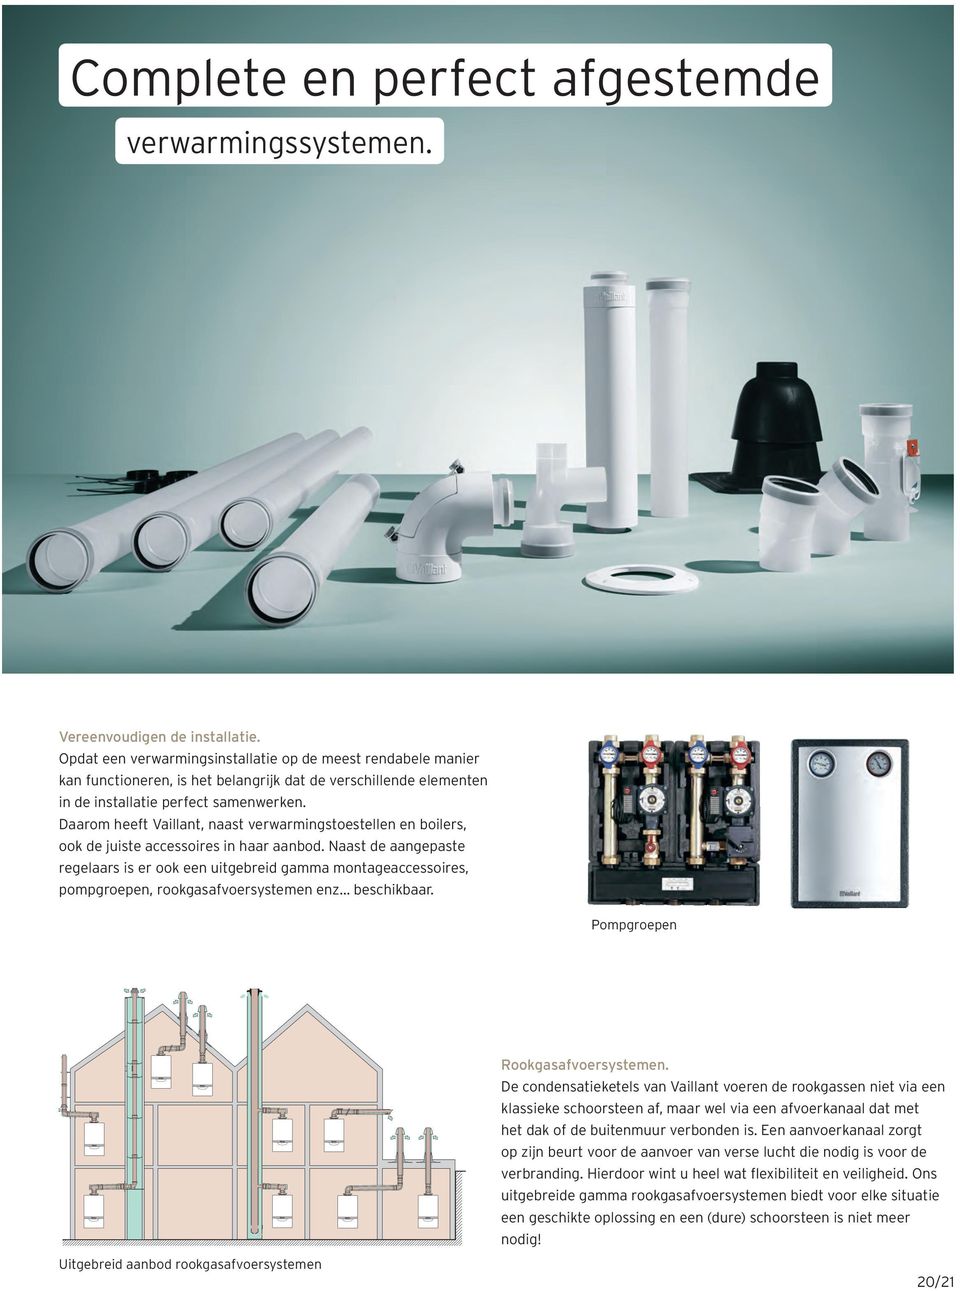 Daarom heeft Vaillant, naast verwarmingstoestellen en boilers, ook de juiste accessoires in haar aanbod.